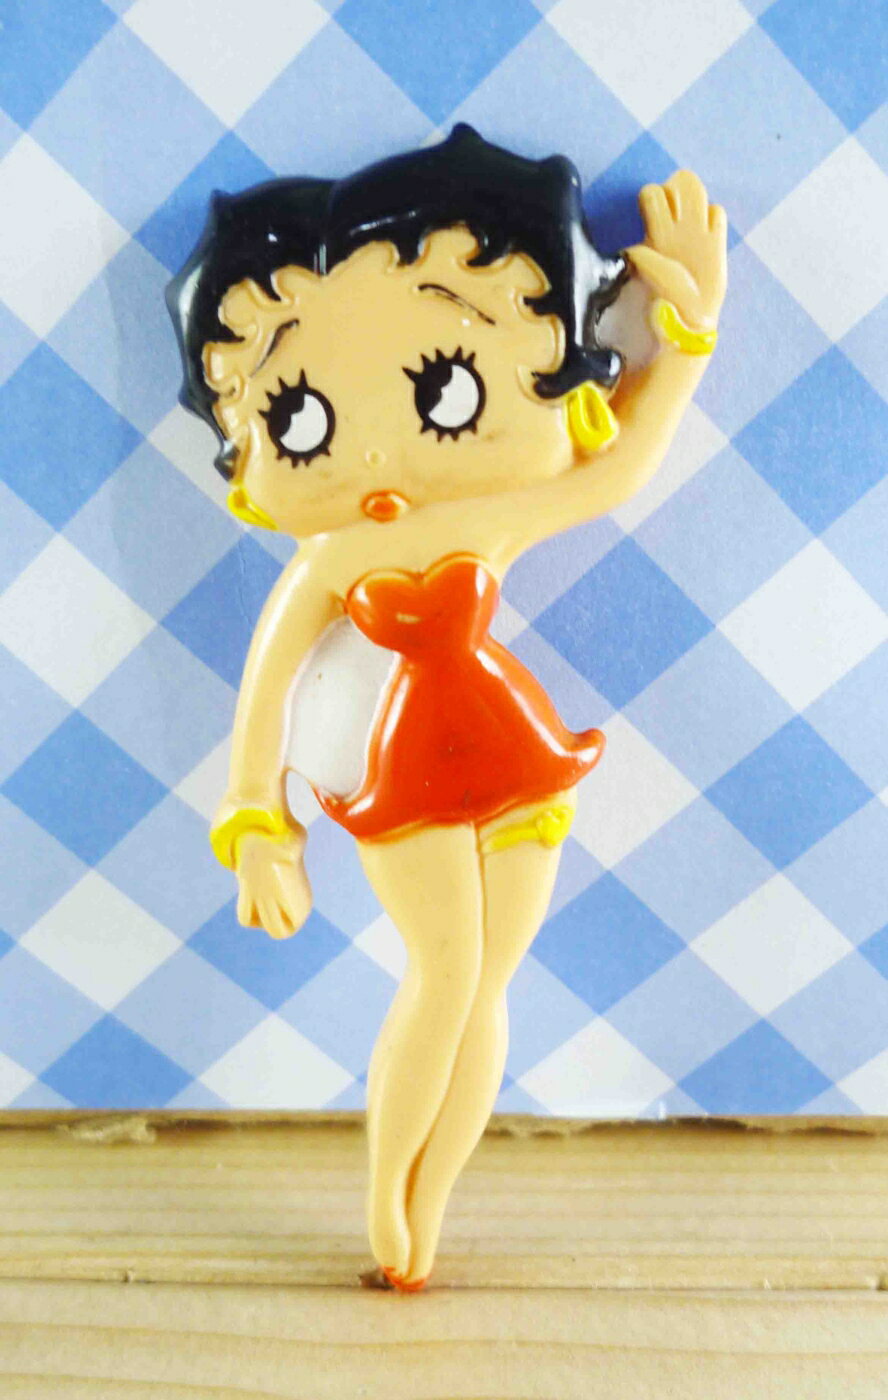 【震撼精品百貨】Betty Boop 貝蒂 造型磁鐵-單人磁鐵 震撼日式精品百貨